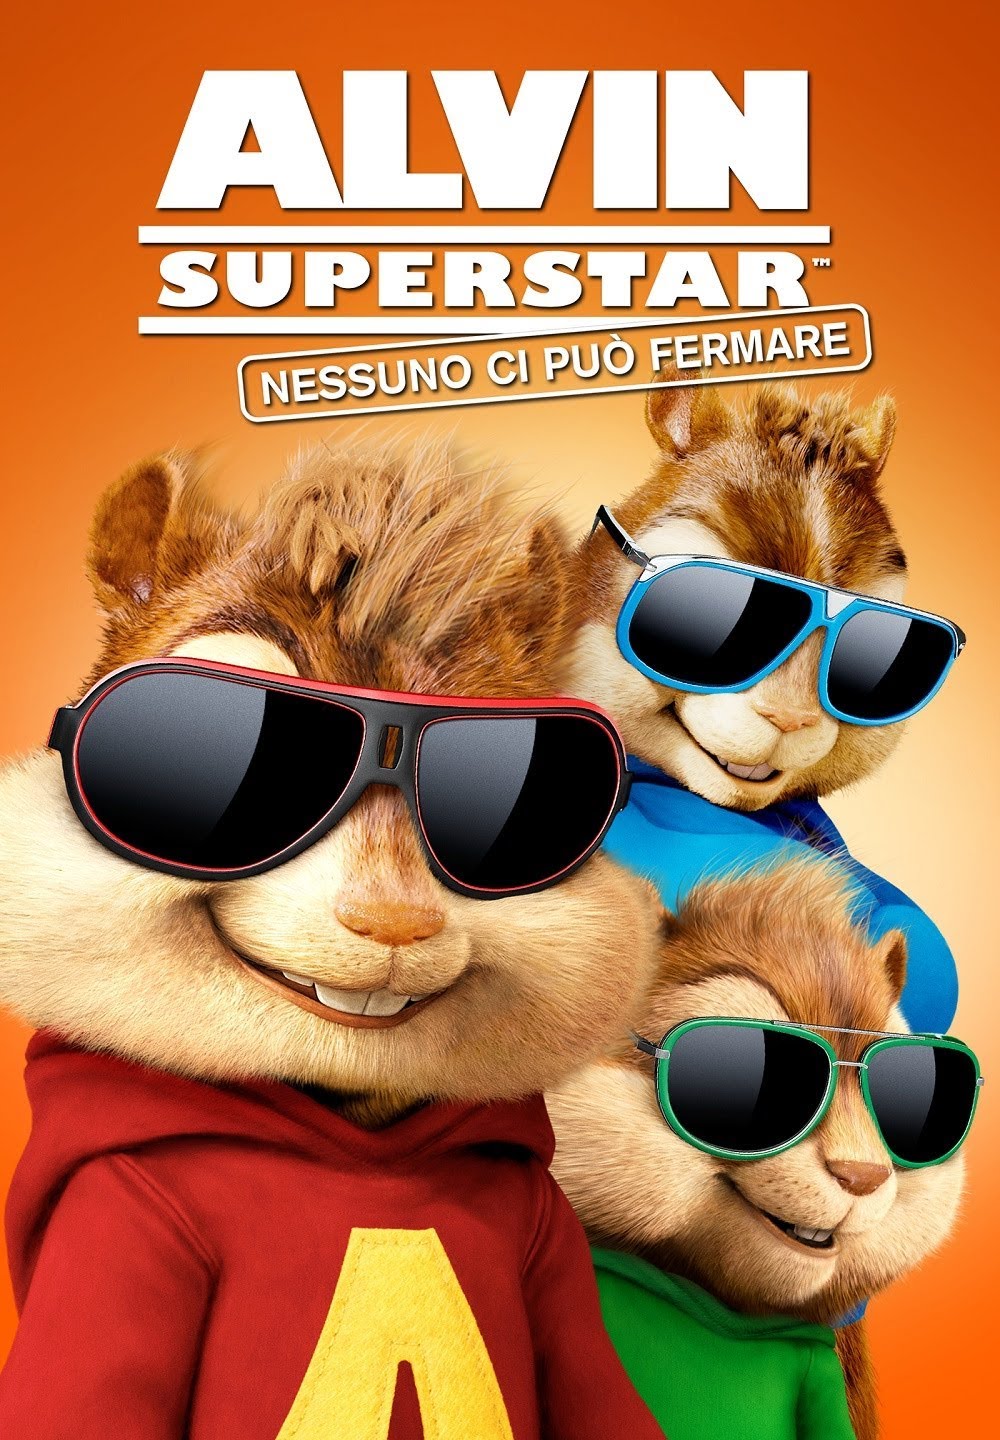 Alvin Superstar: Nessuno ci può fermare [HD] (2015)